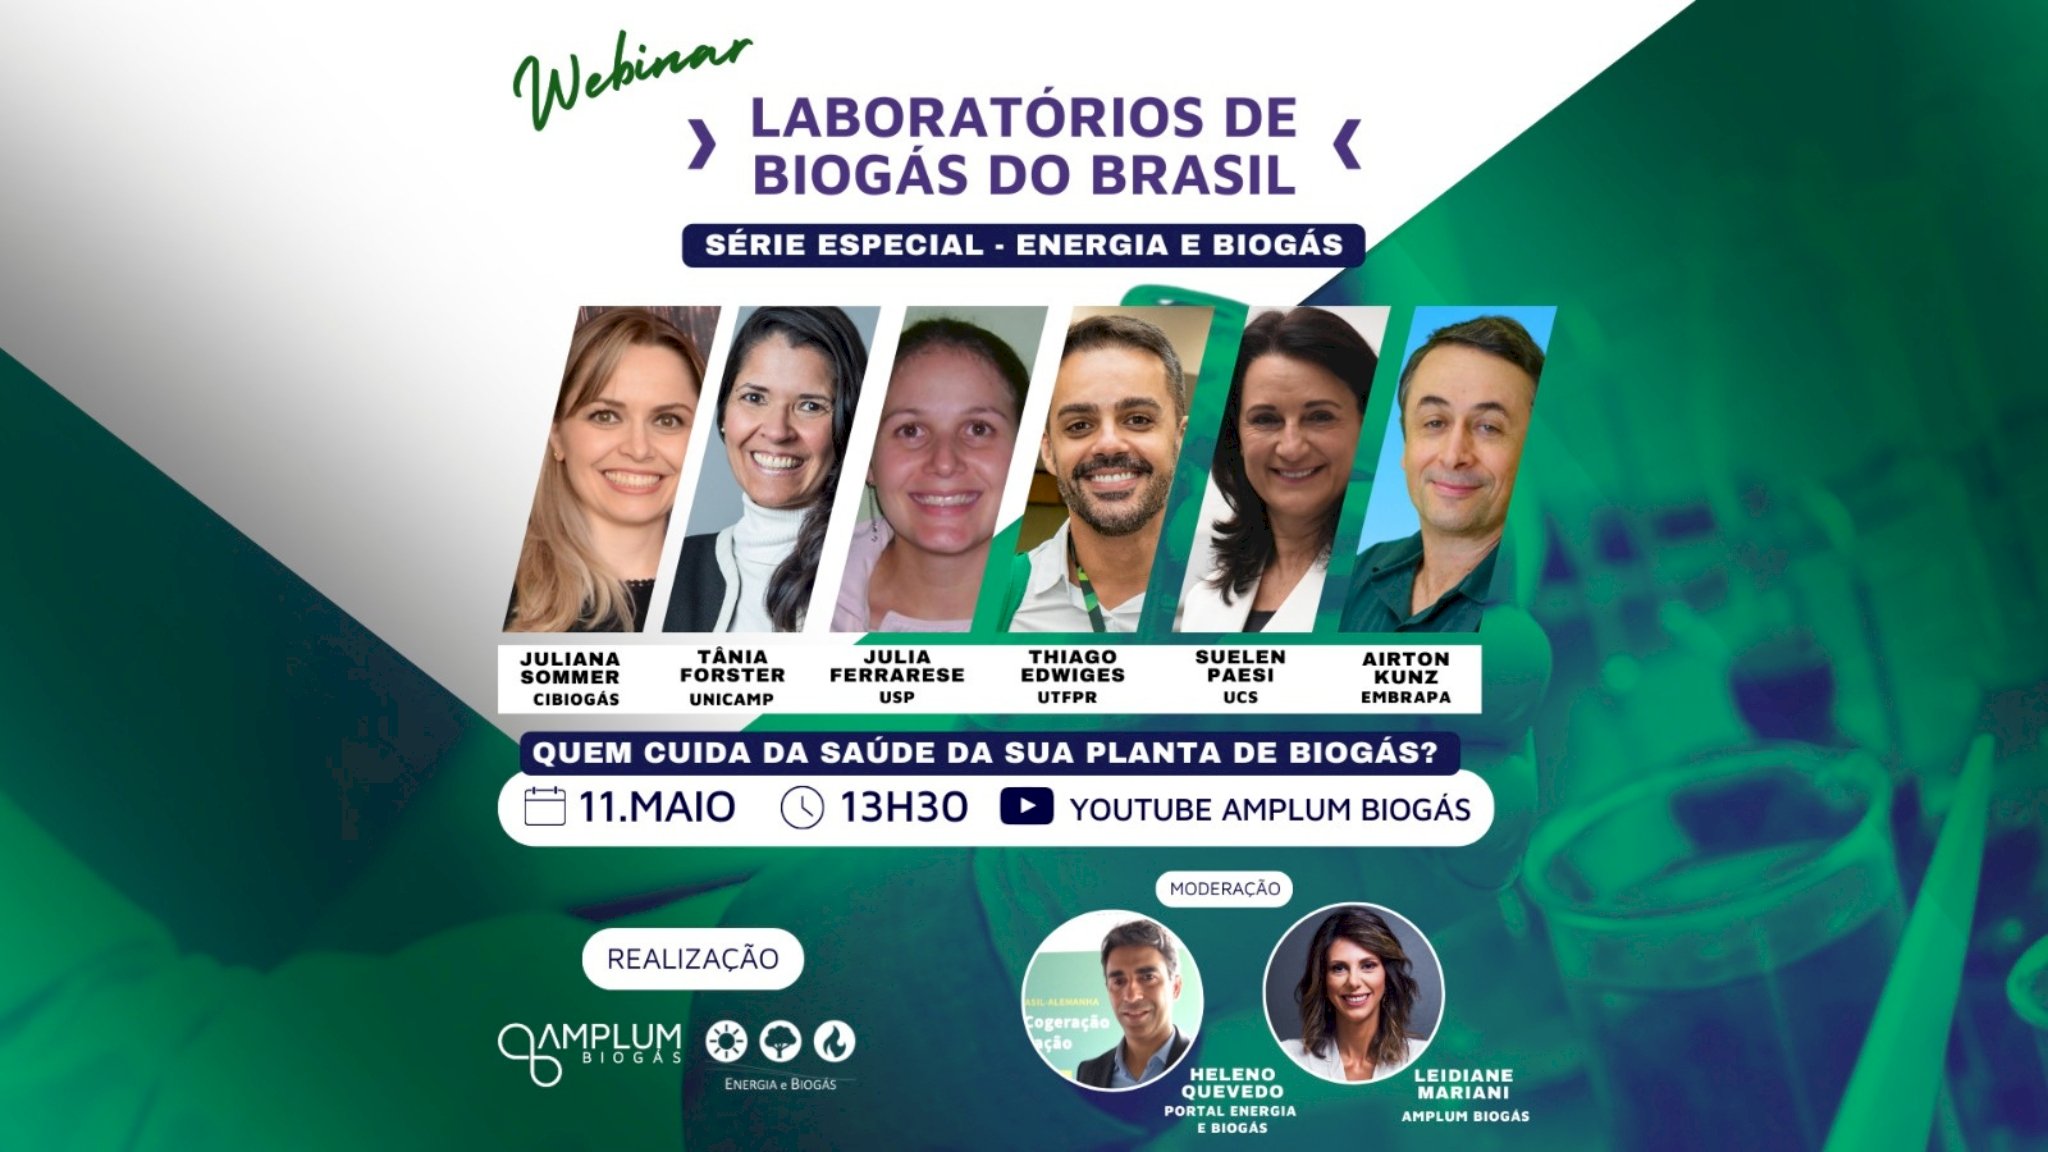 Webinar Laboratórios de Biogás do Brasil - Quem cuida da saúde da sua planta de biogás?